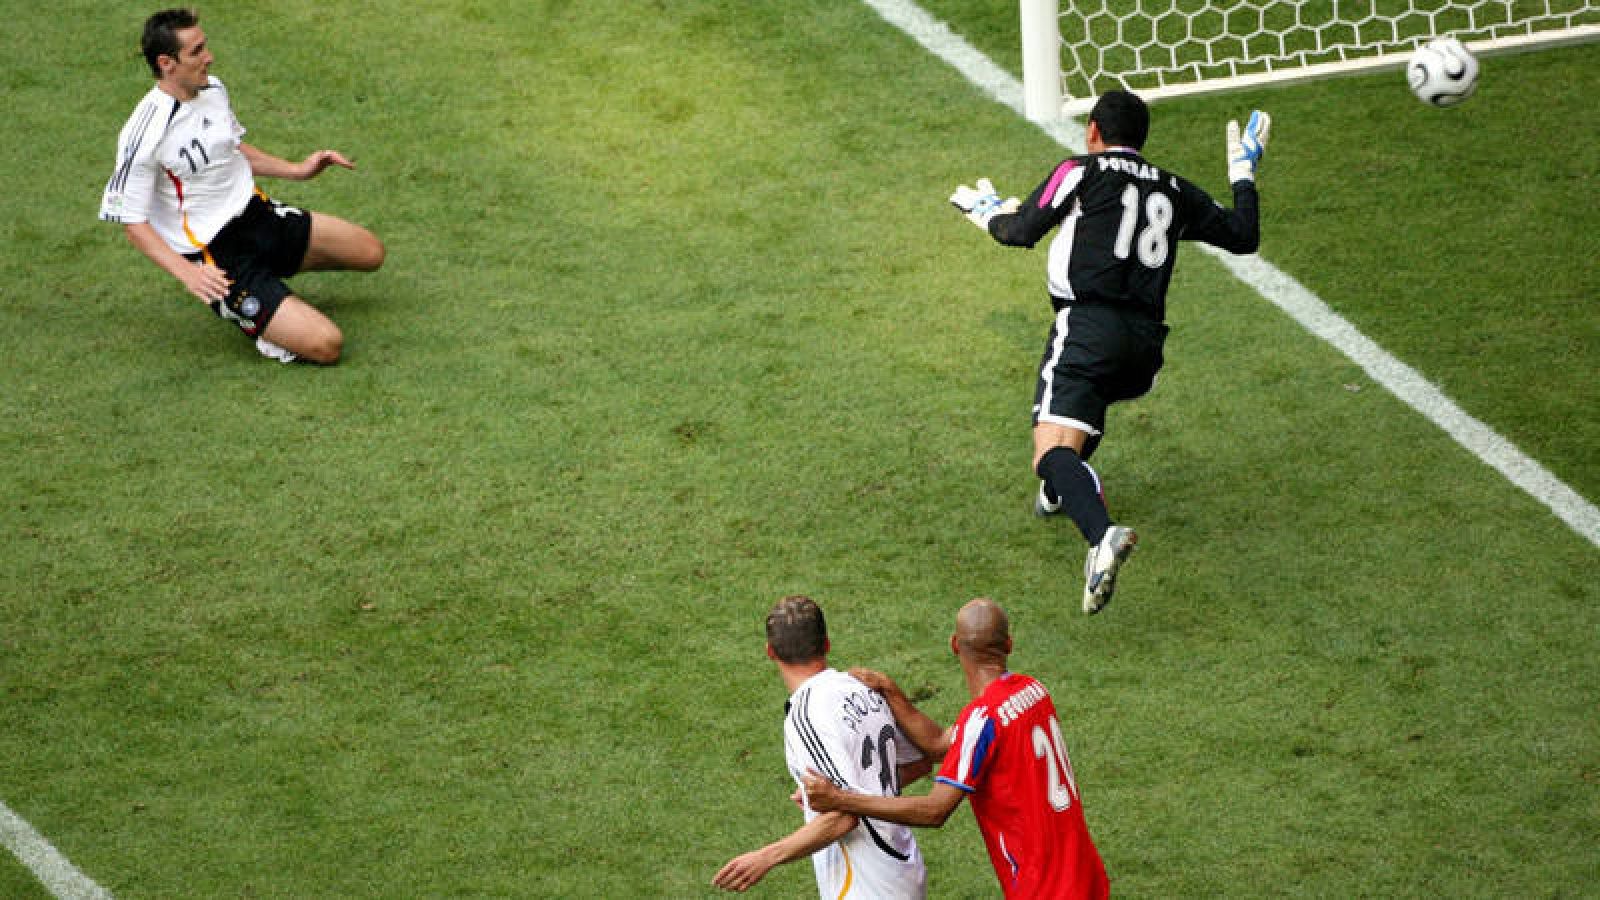 Alemania ganó 4-2 a Costa Rica en su partido inaugural como anfitriona en 2006